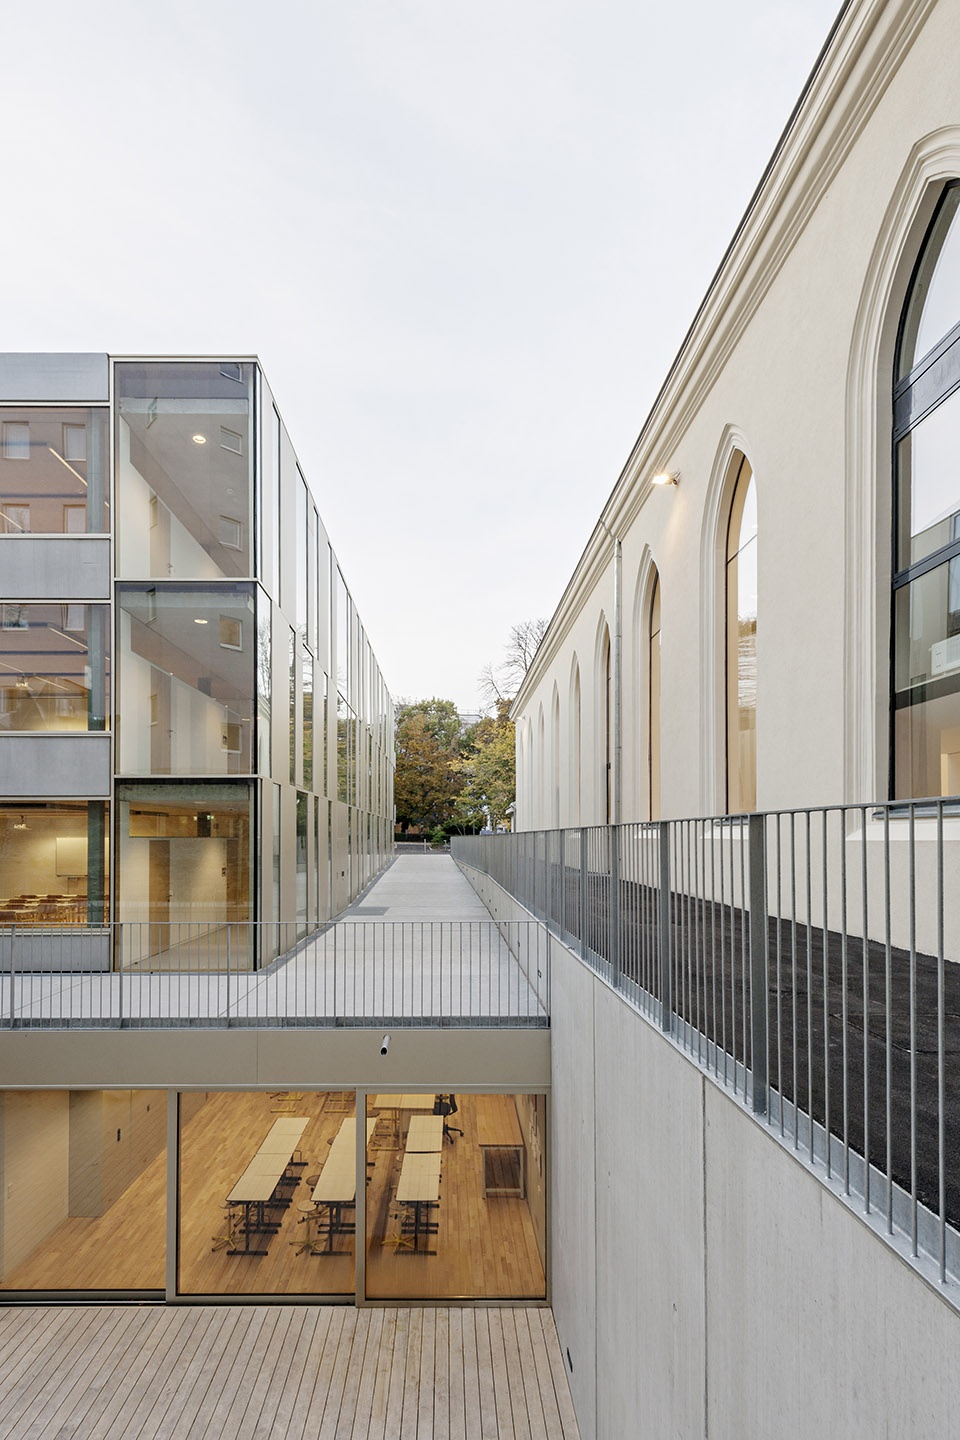 维也纳法国学校扩建及Molière工作室翻新/在构建新教学楼的同时彰显旧剧场的文化功能-23